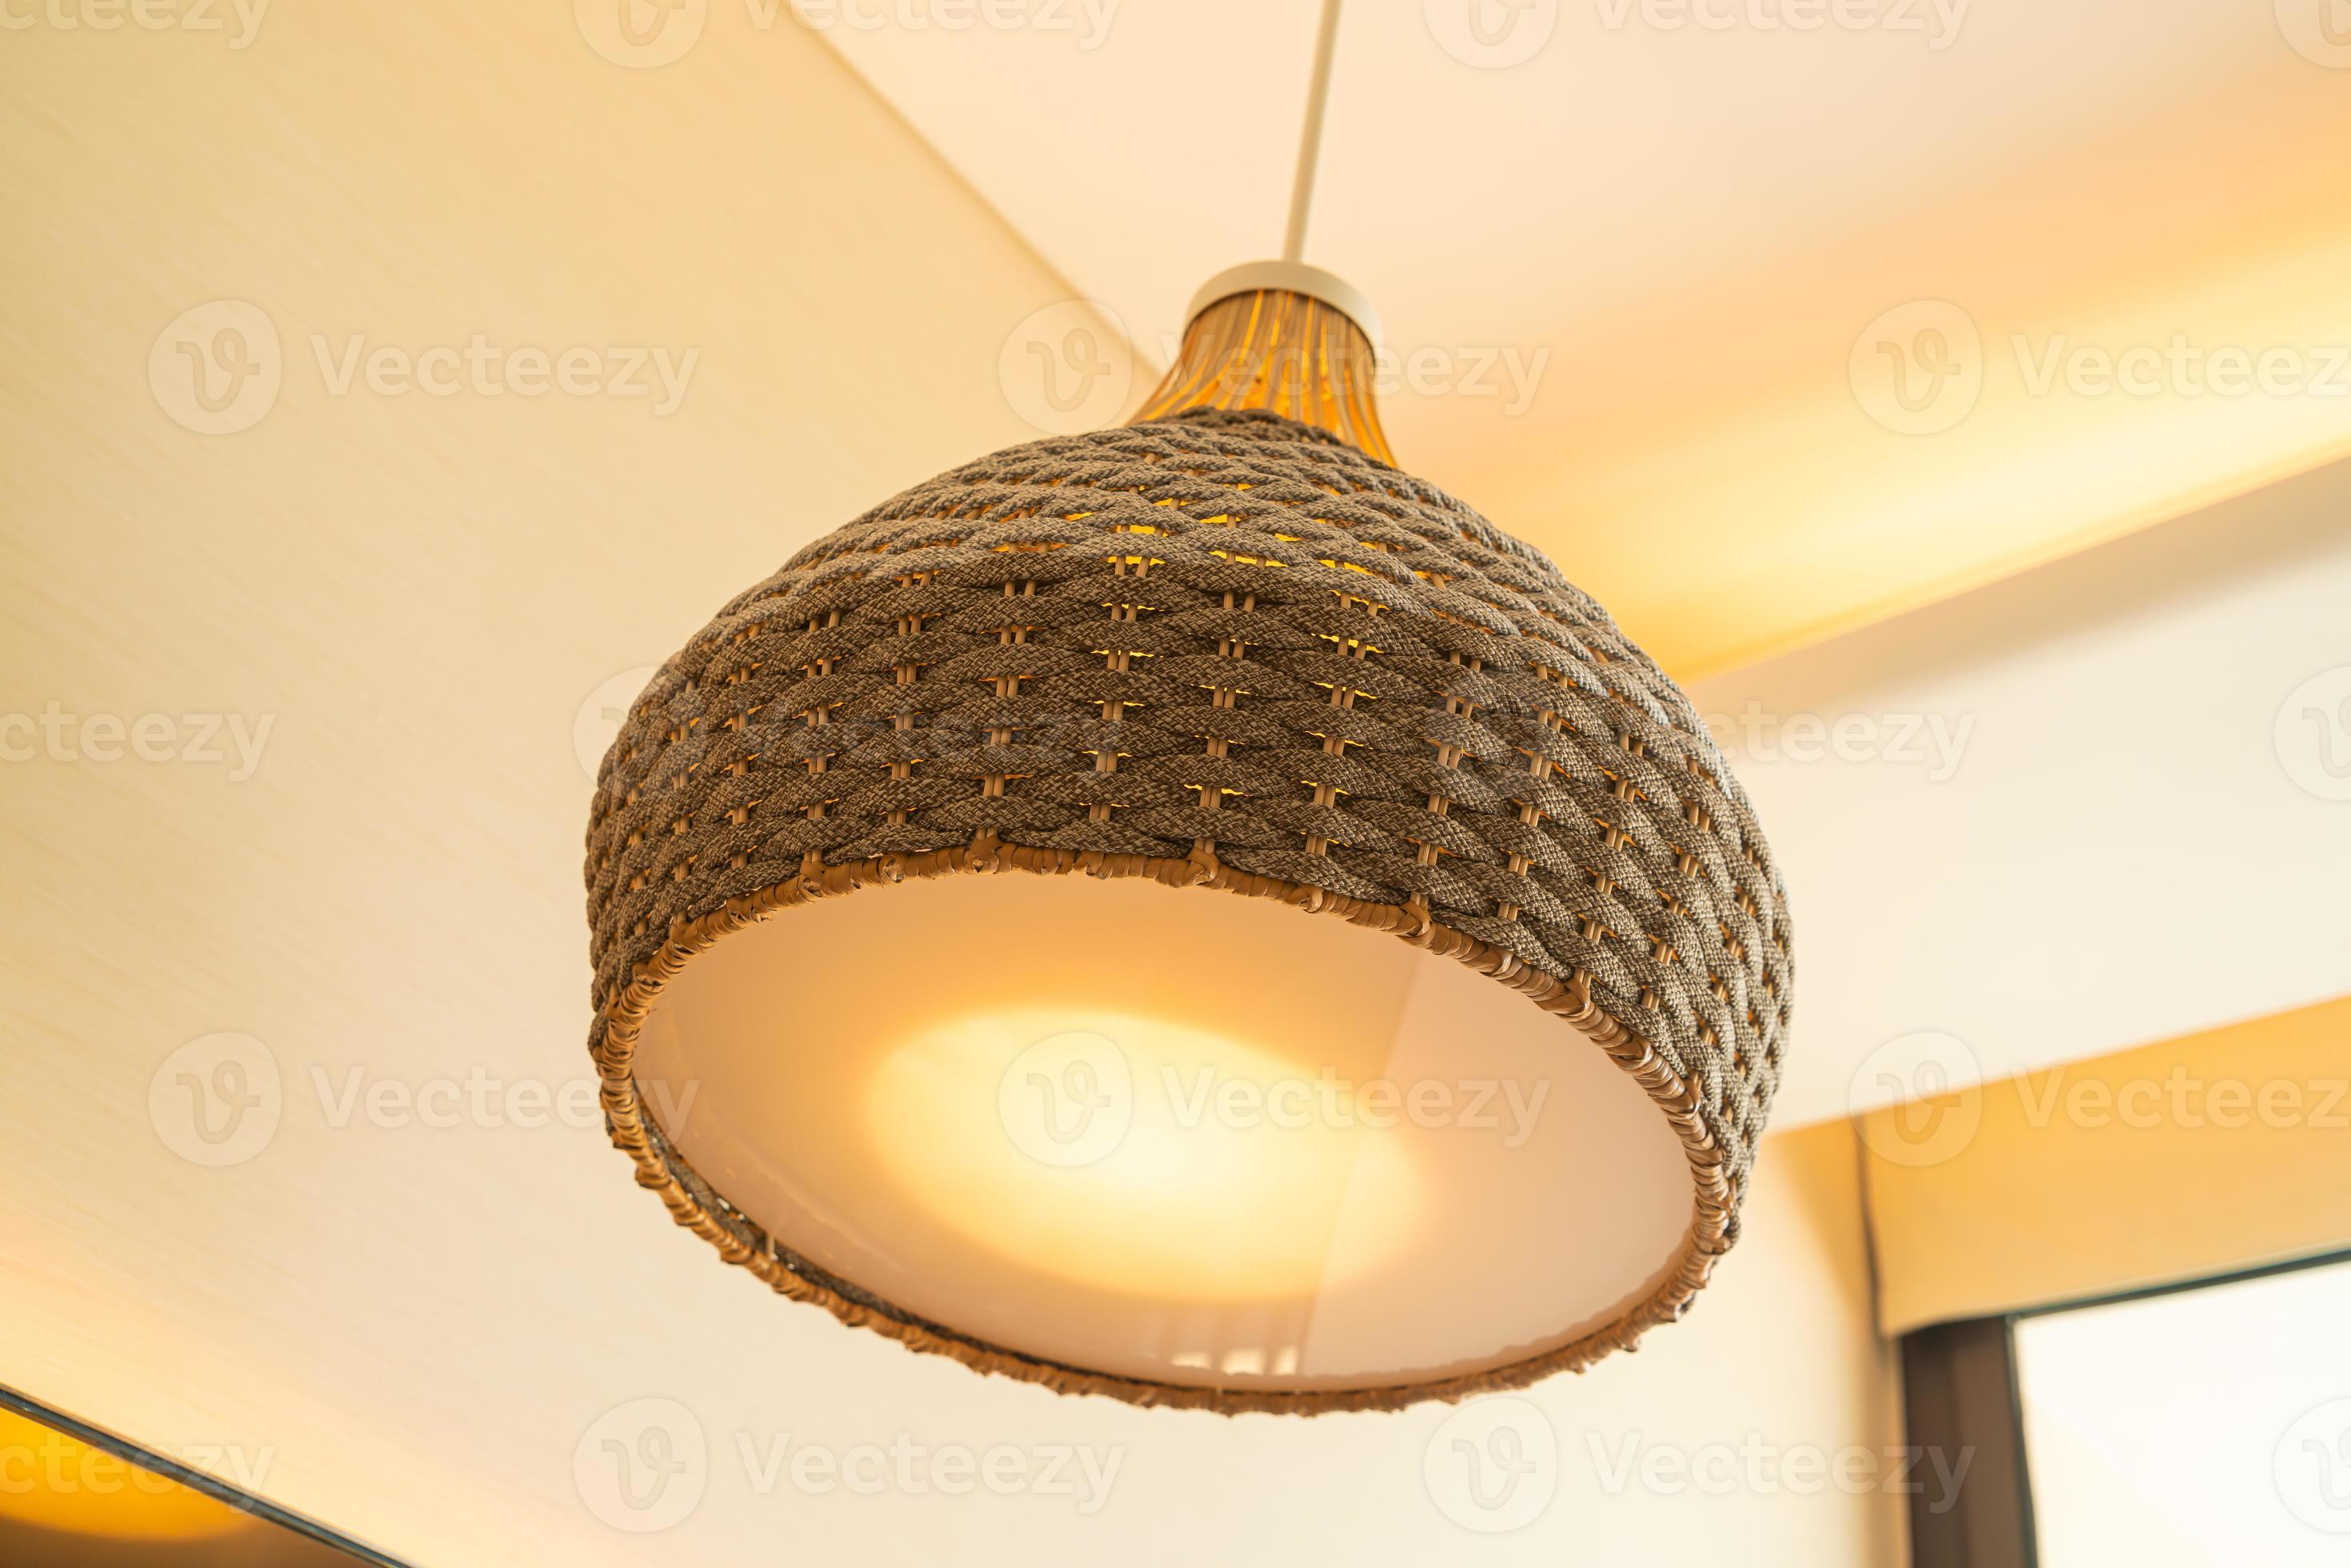 wijsvinger trui kust close-up mooie rieten lamp met verlichting 4423759 stockfoto bij Vecteezy